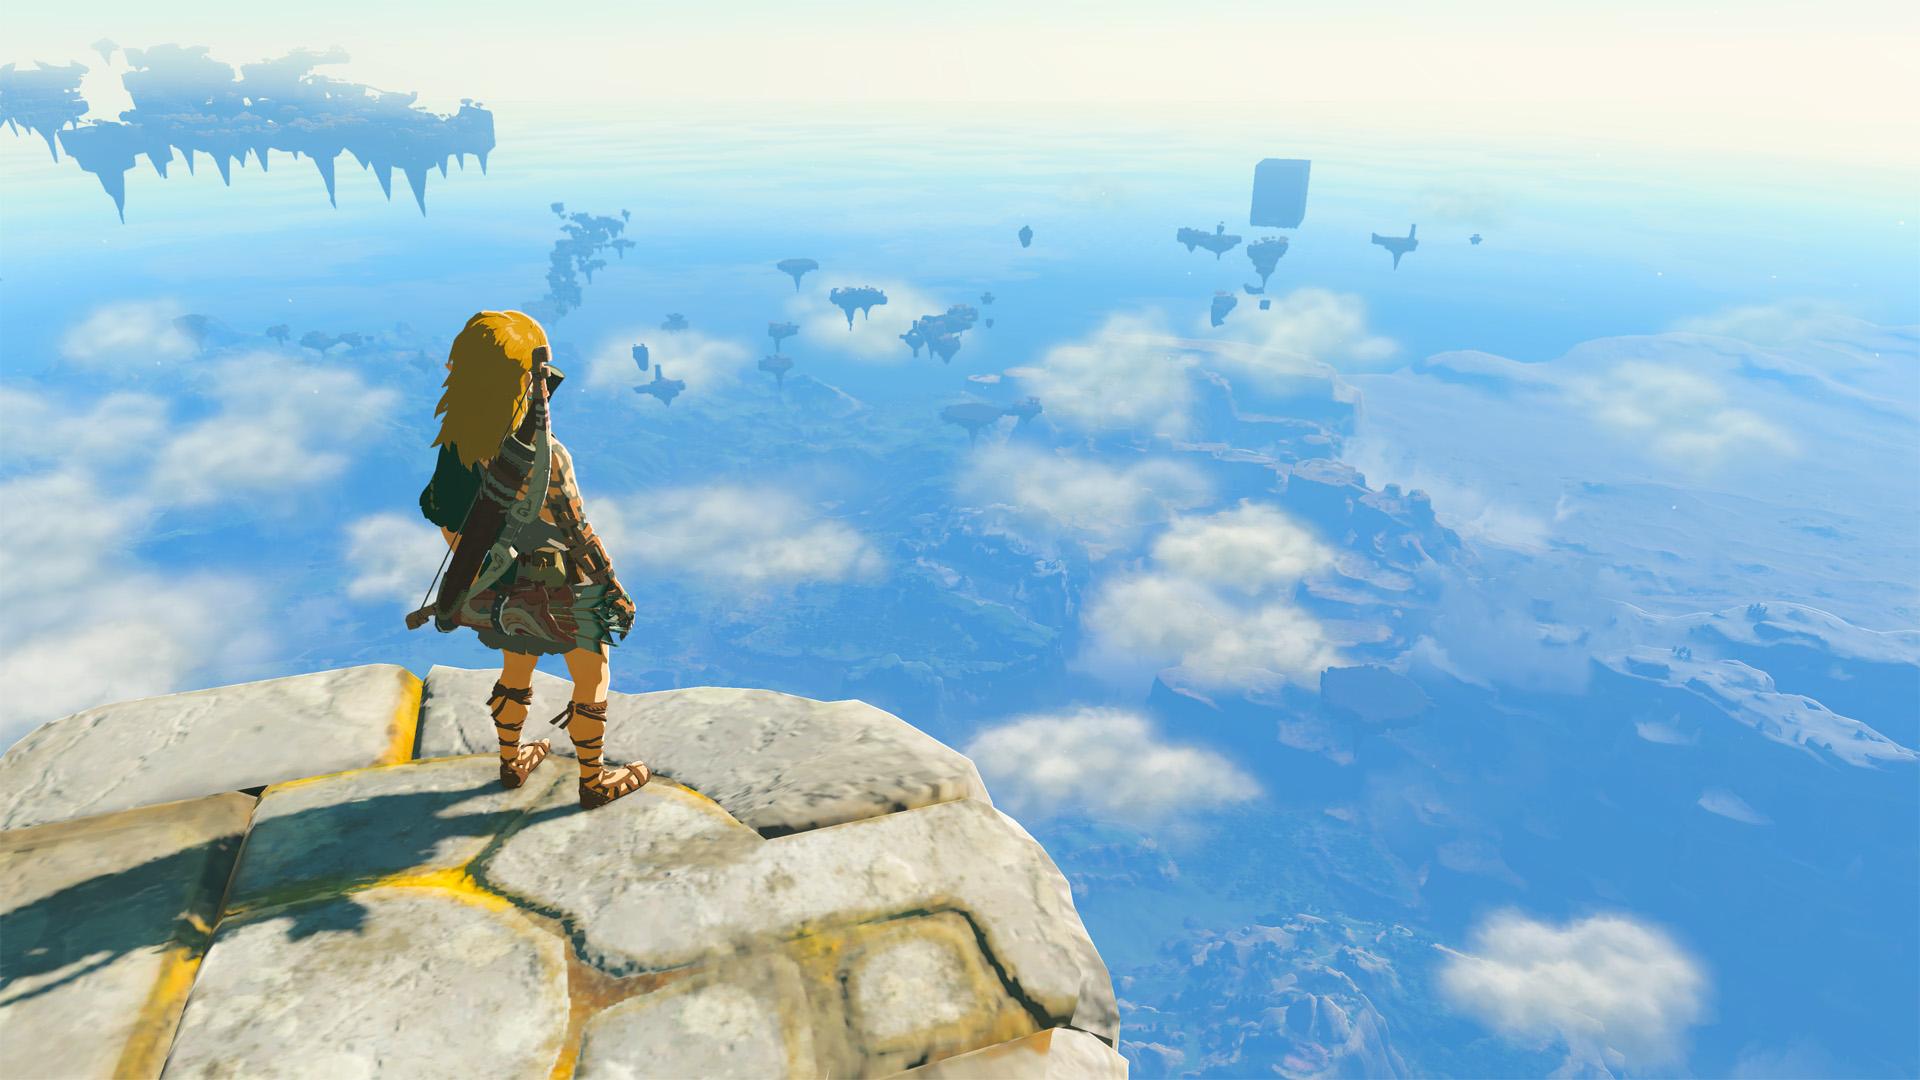 'Lágrimas do Reino' Link olhando para Hyrule no topo de uma ilha no céu.